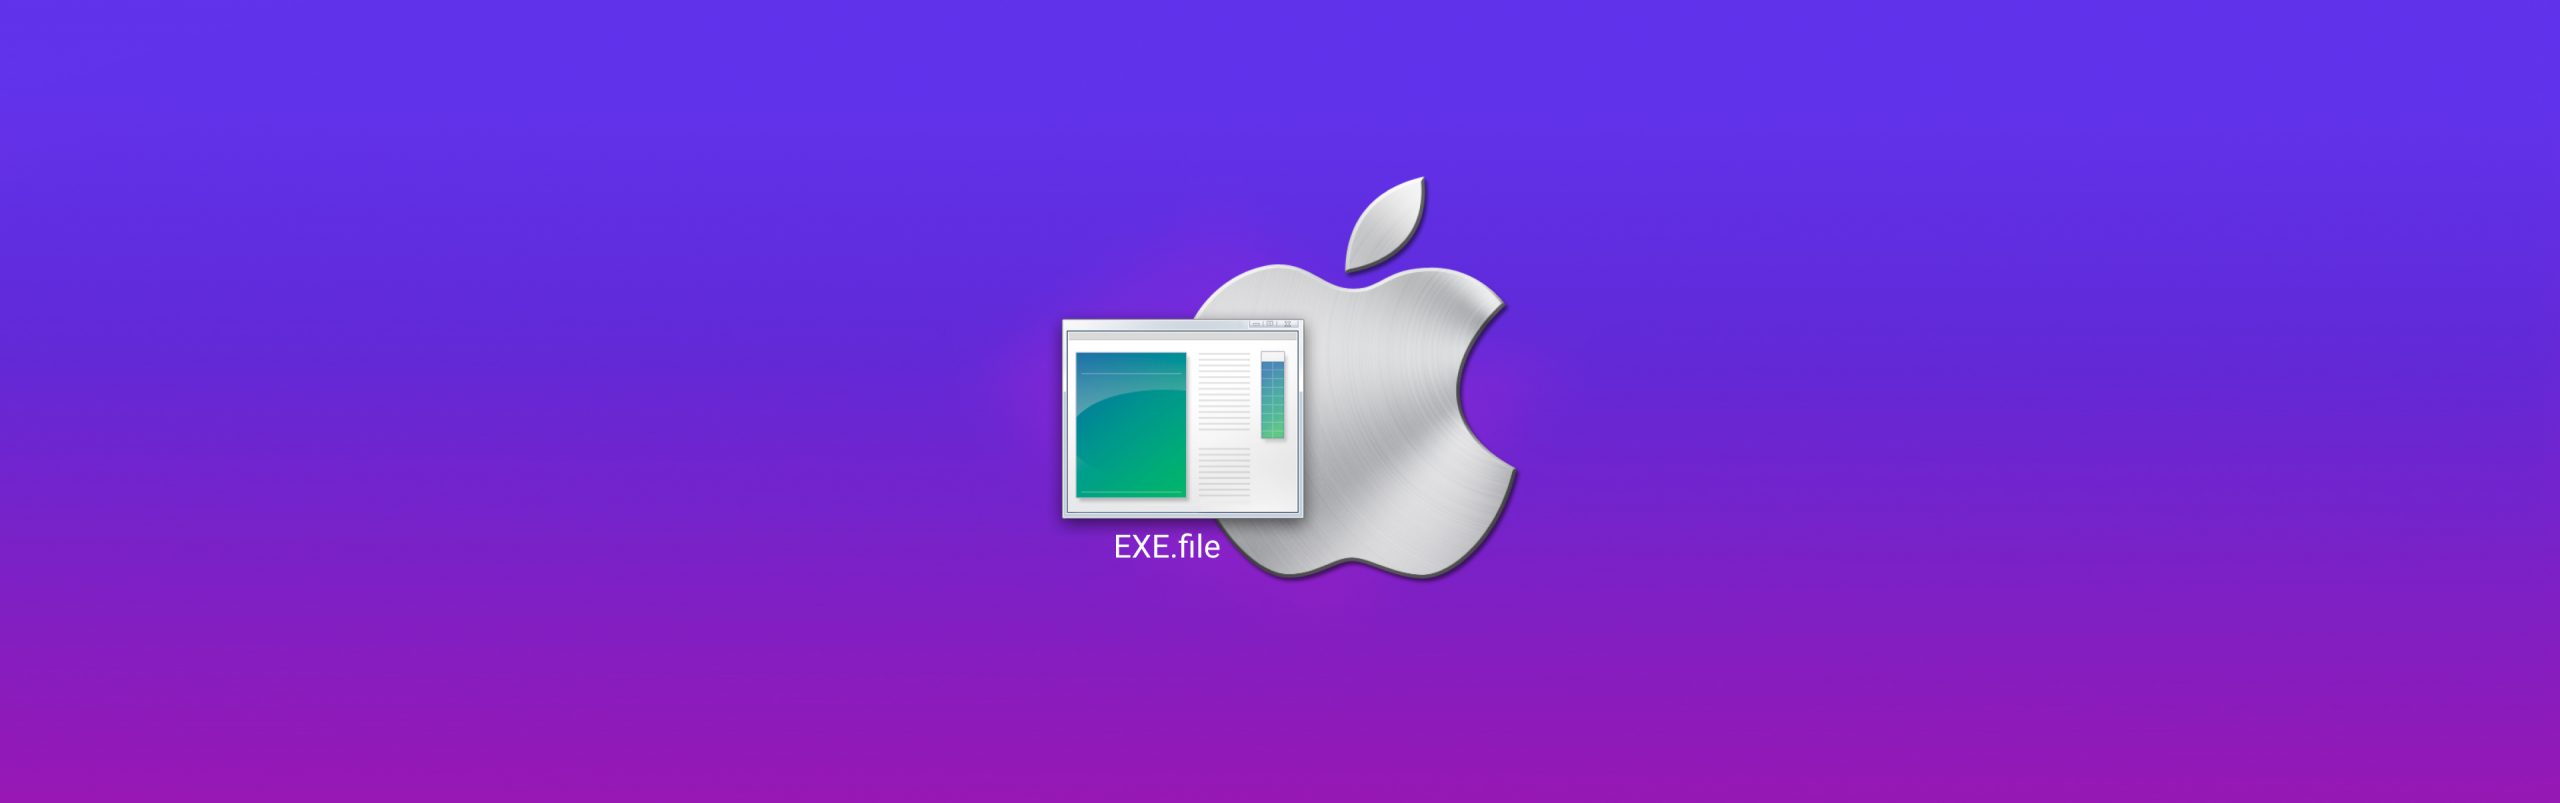 exe emulator for mac